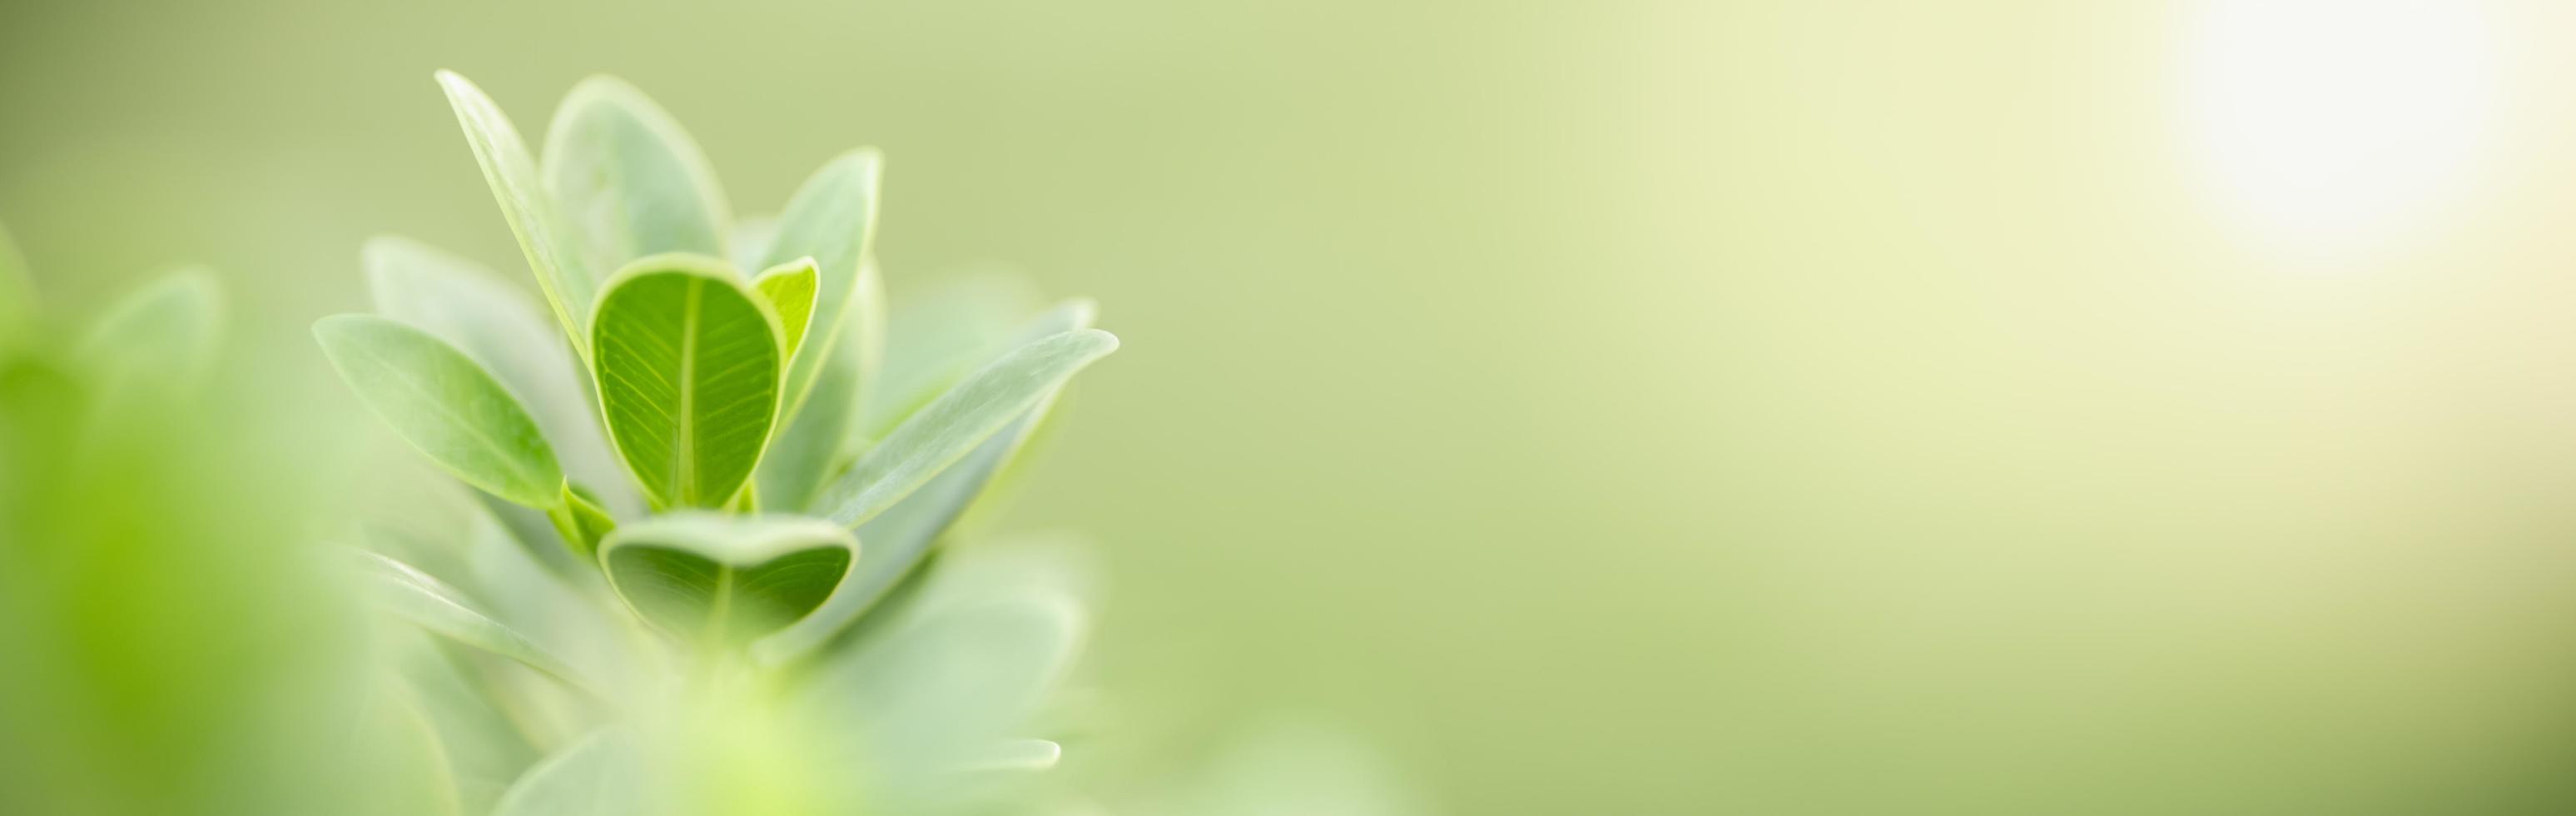 close-up van de natuur weergave groen blad op wazig groen achtergrond onder zonlicht met bokeh en kopieer ruimte als achtergrond natuurlijke planten landschap, ecologie dekking concept. foto